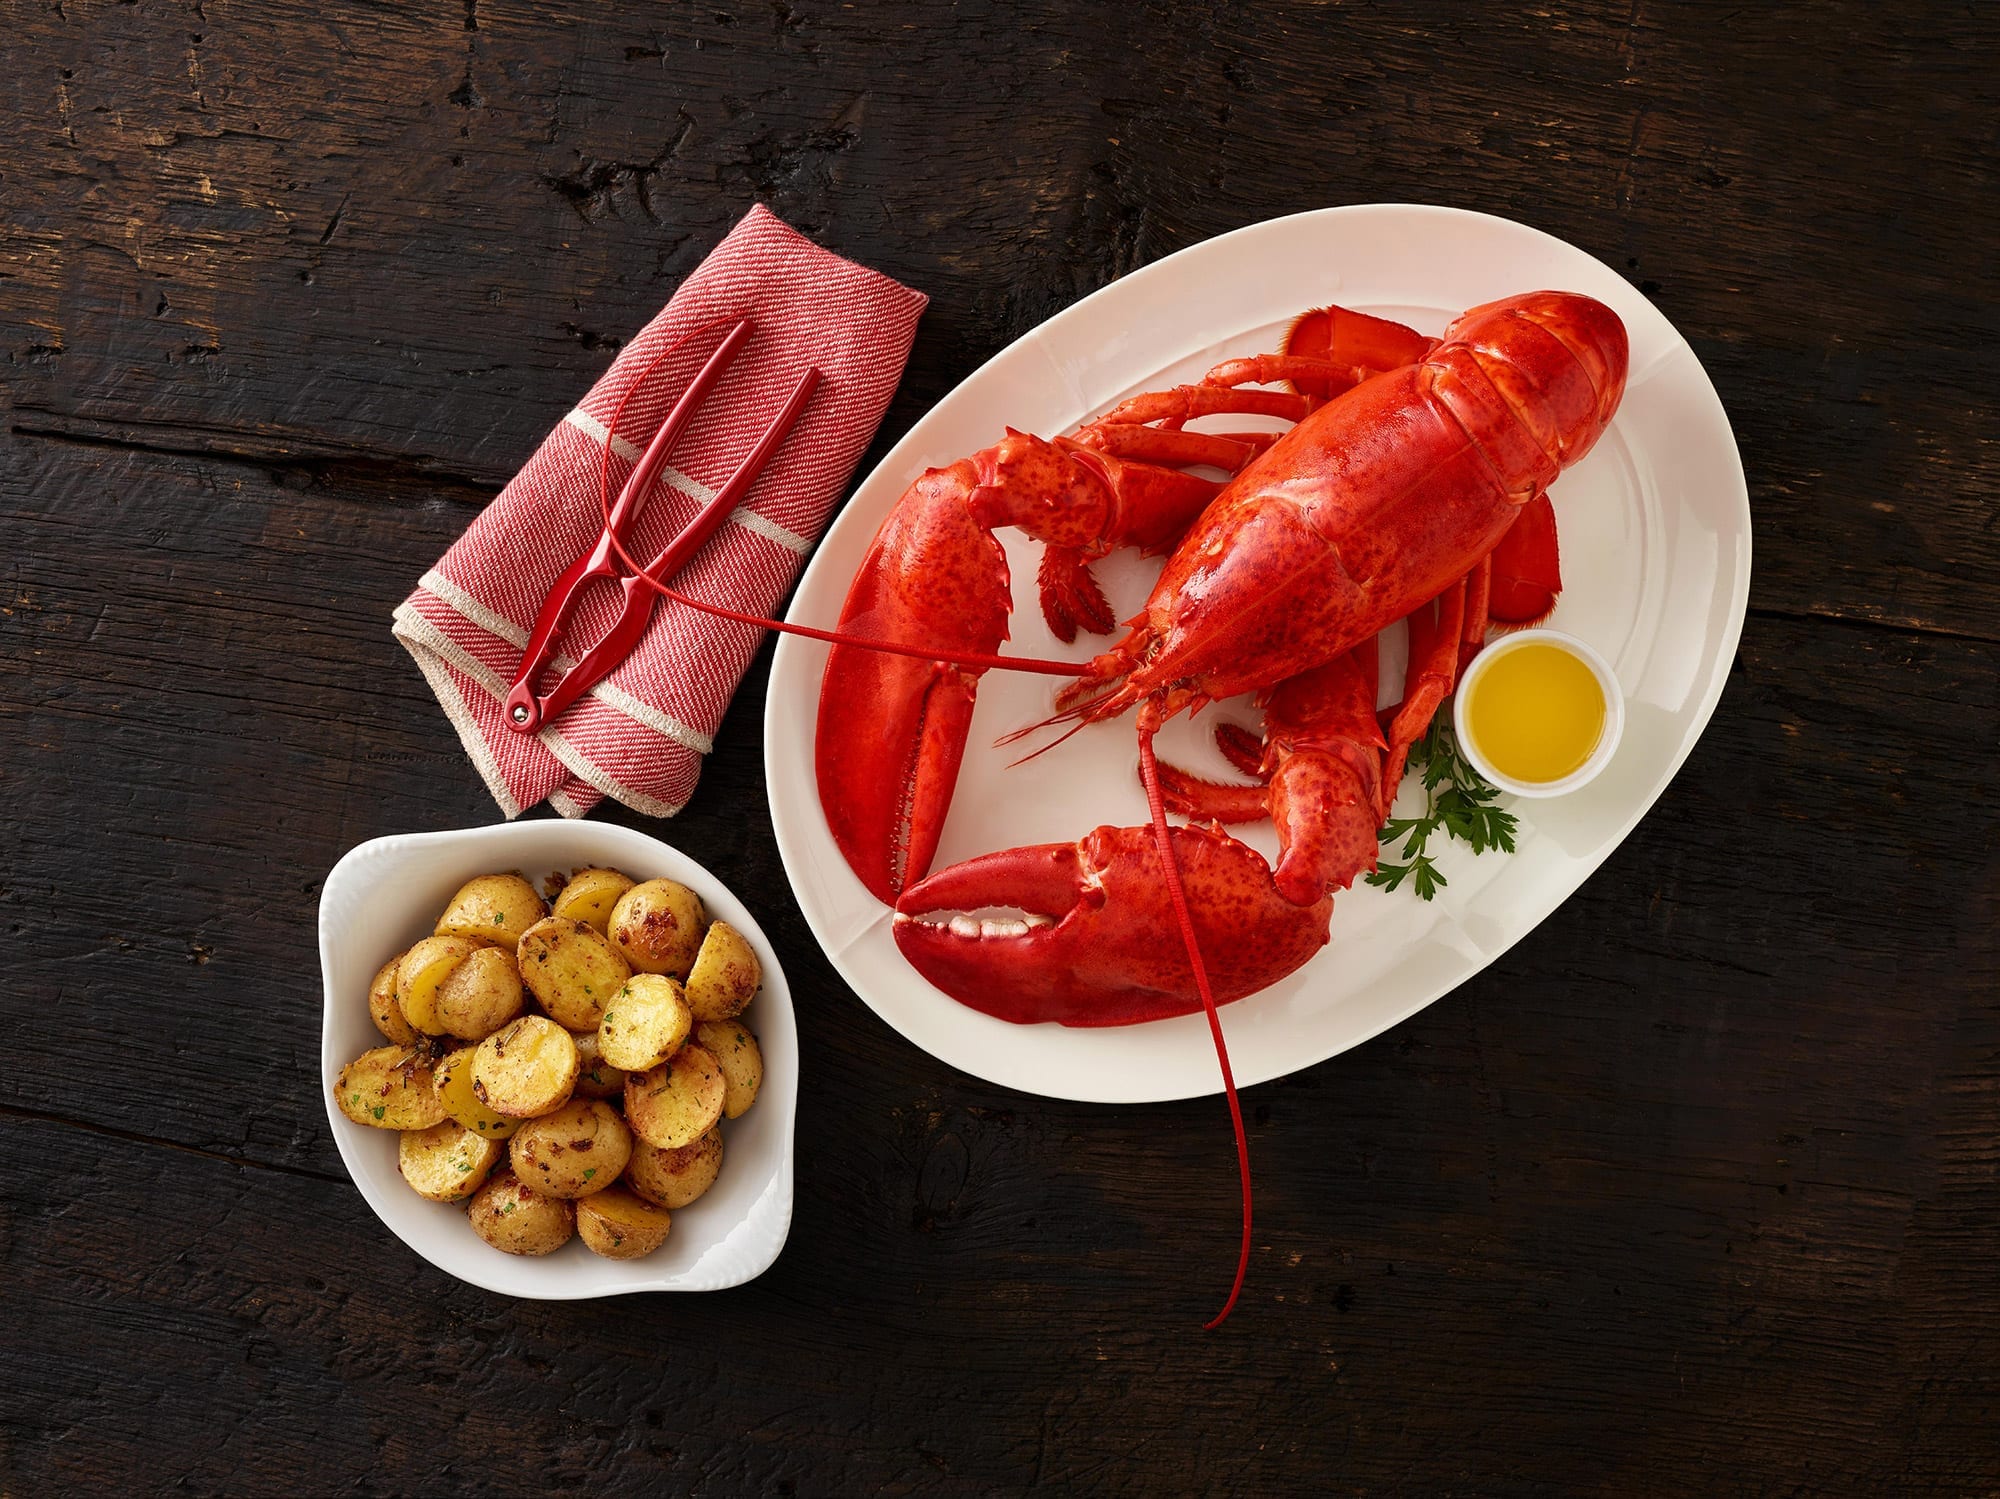 When is Maine Lobster Season?